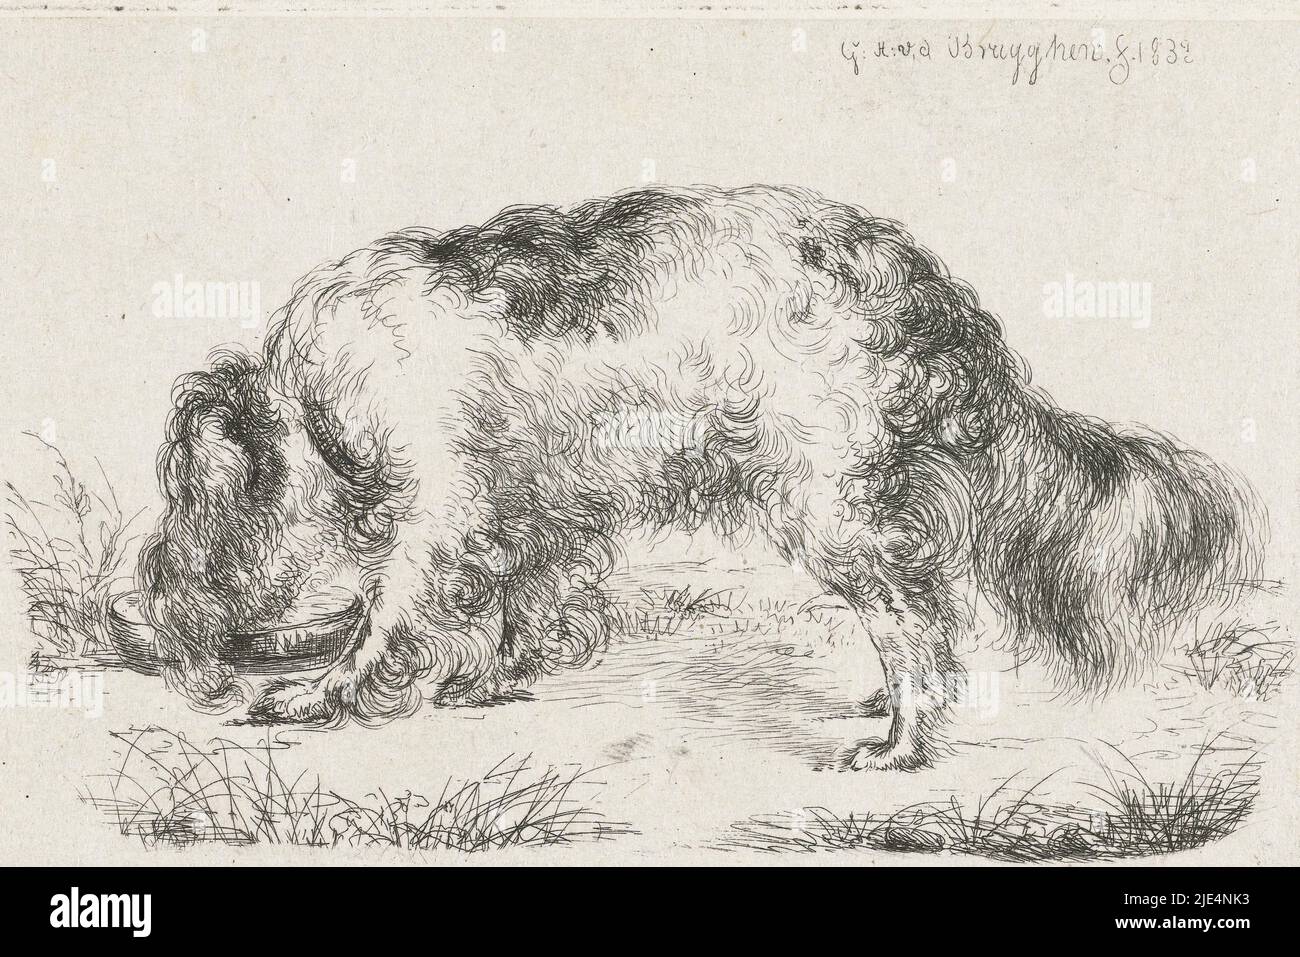 Drinking dog, print maker: Guillaume Anne van der Brugghen, (mentioned on object), Guillaume Anne van der Brugghen, 1832, paper, etching, h 80 mm × w 120 mm Stock Photo